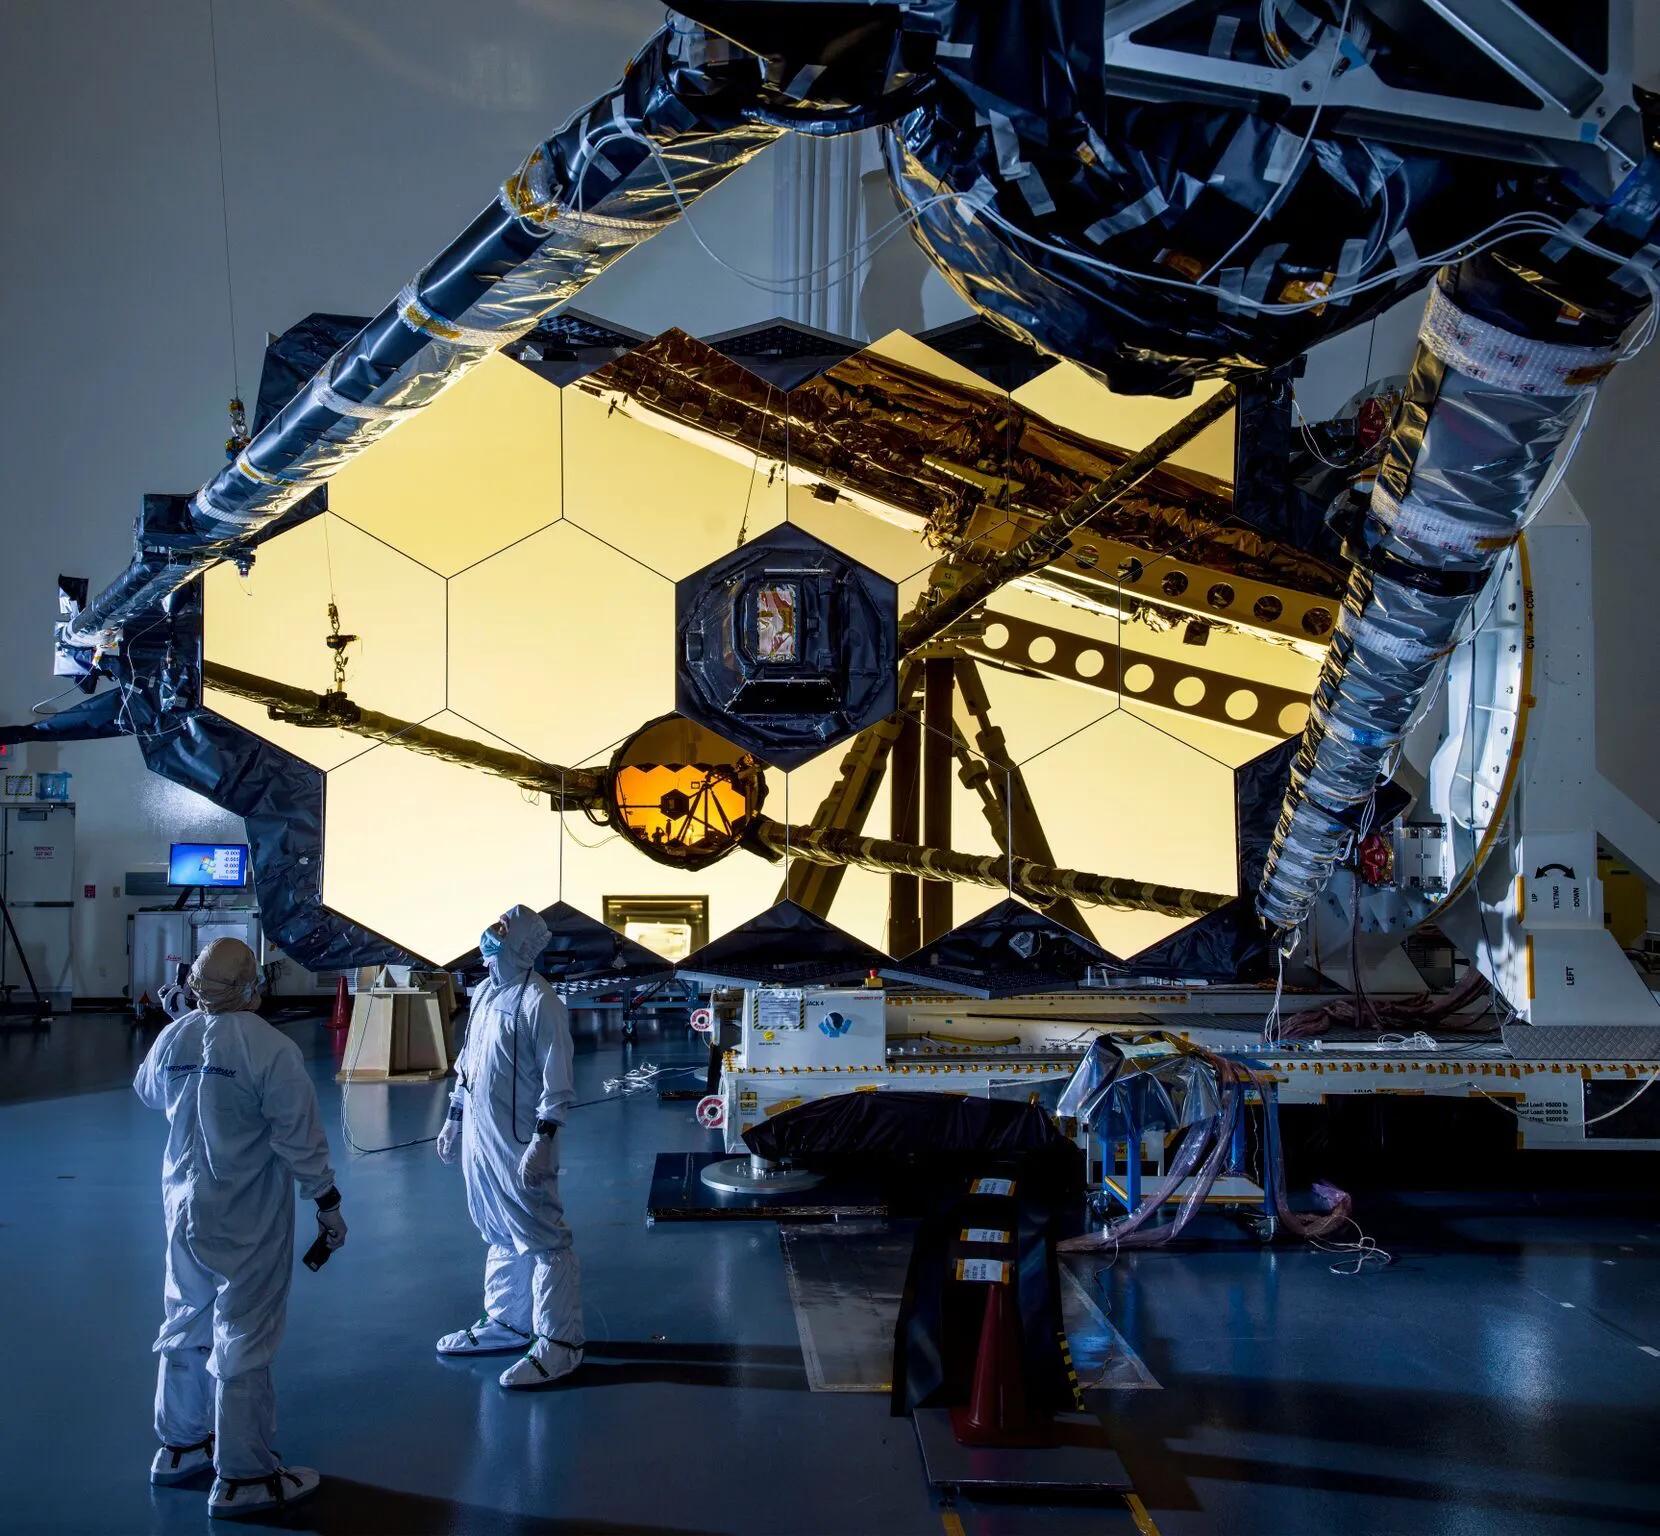 韦伯太空望远镜,造价100亿美元,美国暴露了宇宙探索计划